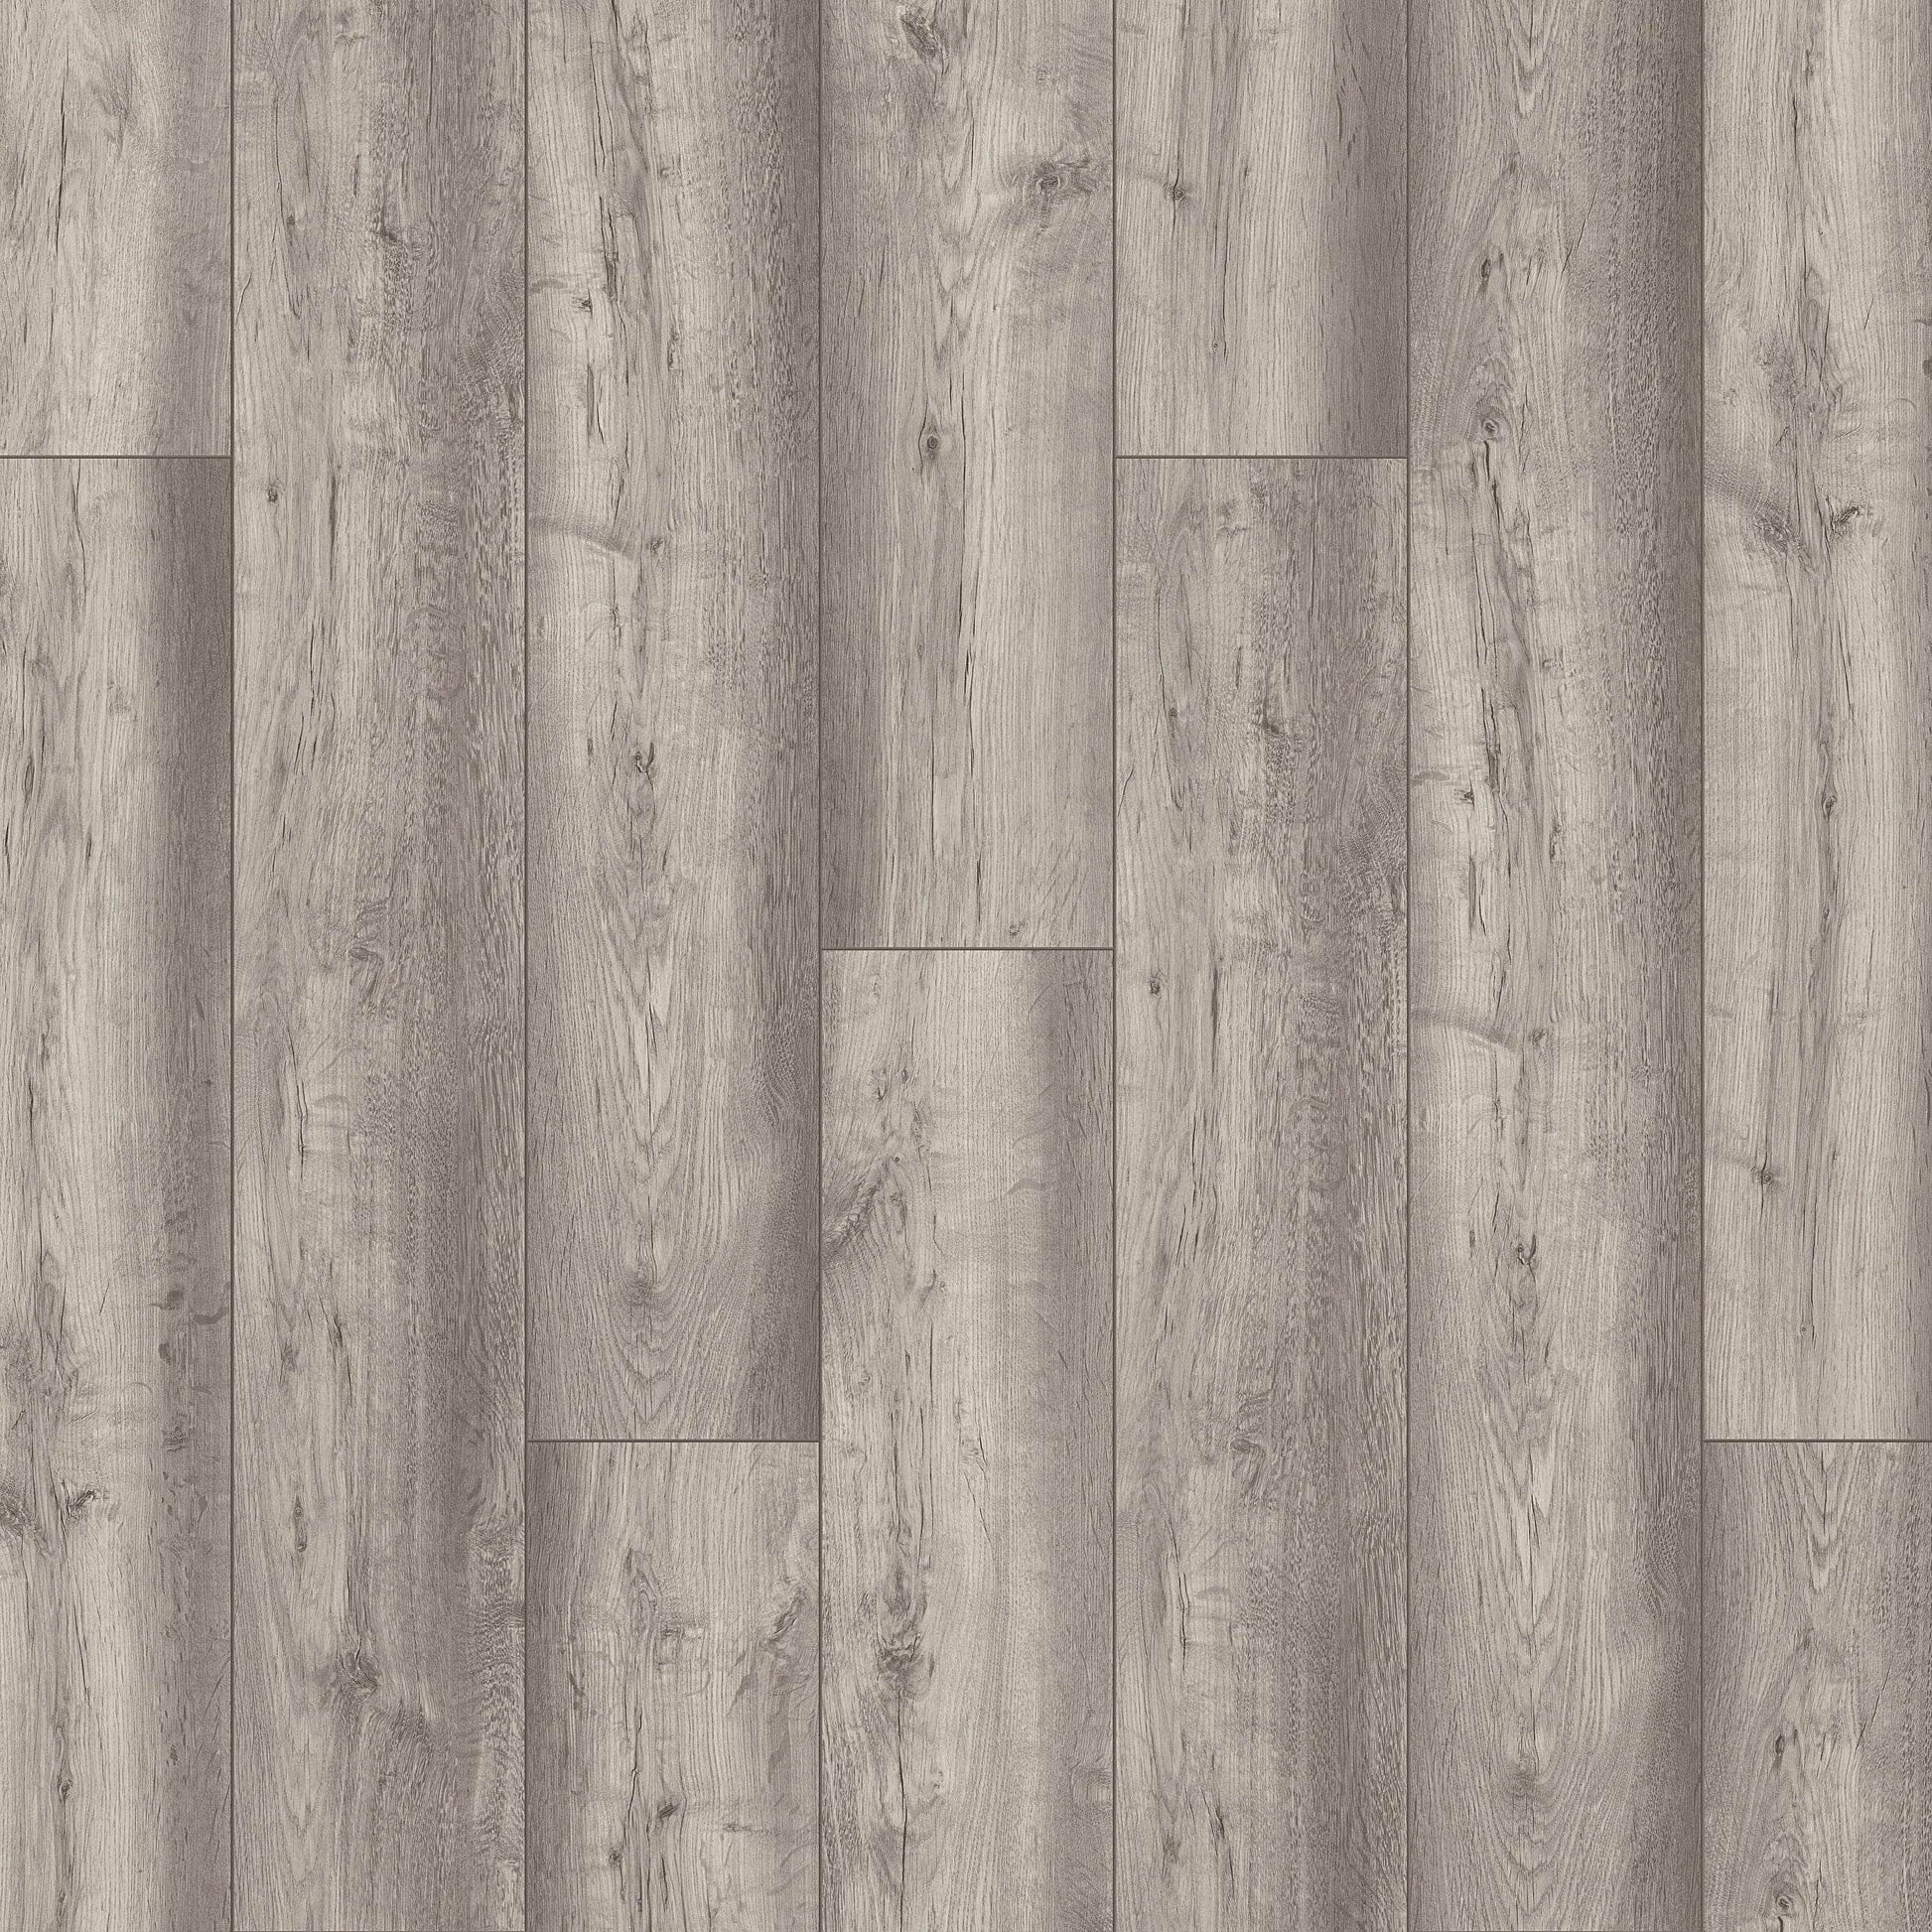 Flooring & Carpet  -  Krono Vario Plus Dartmoor Oak 12mm Laminate Flooring (1.48m² Pack)  -  60003740